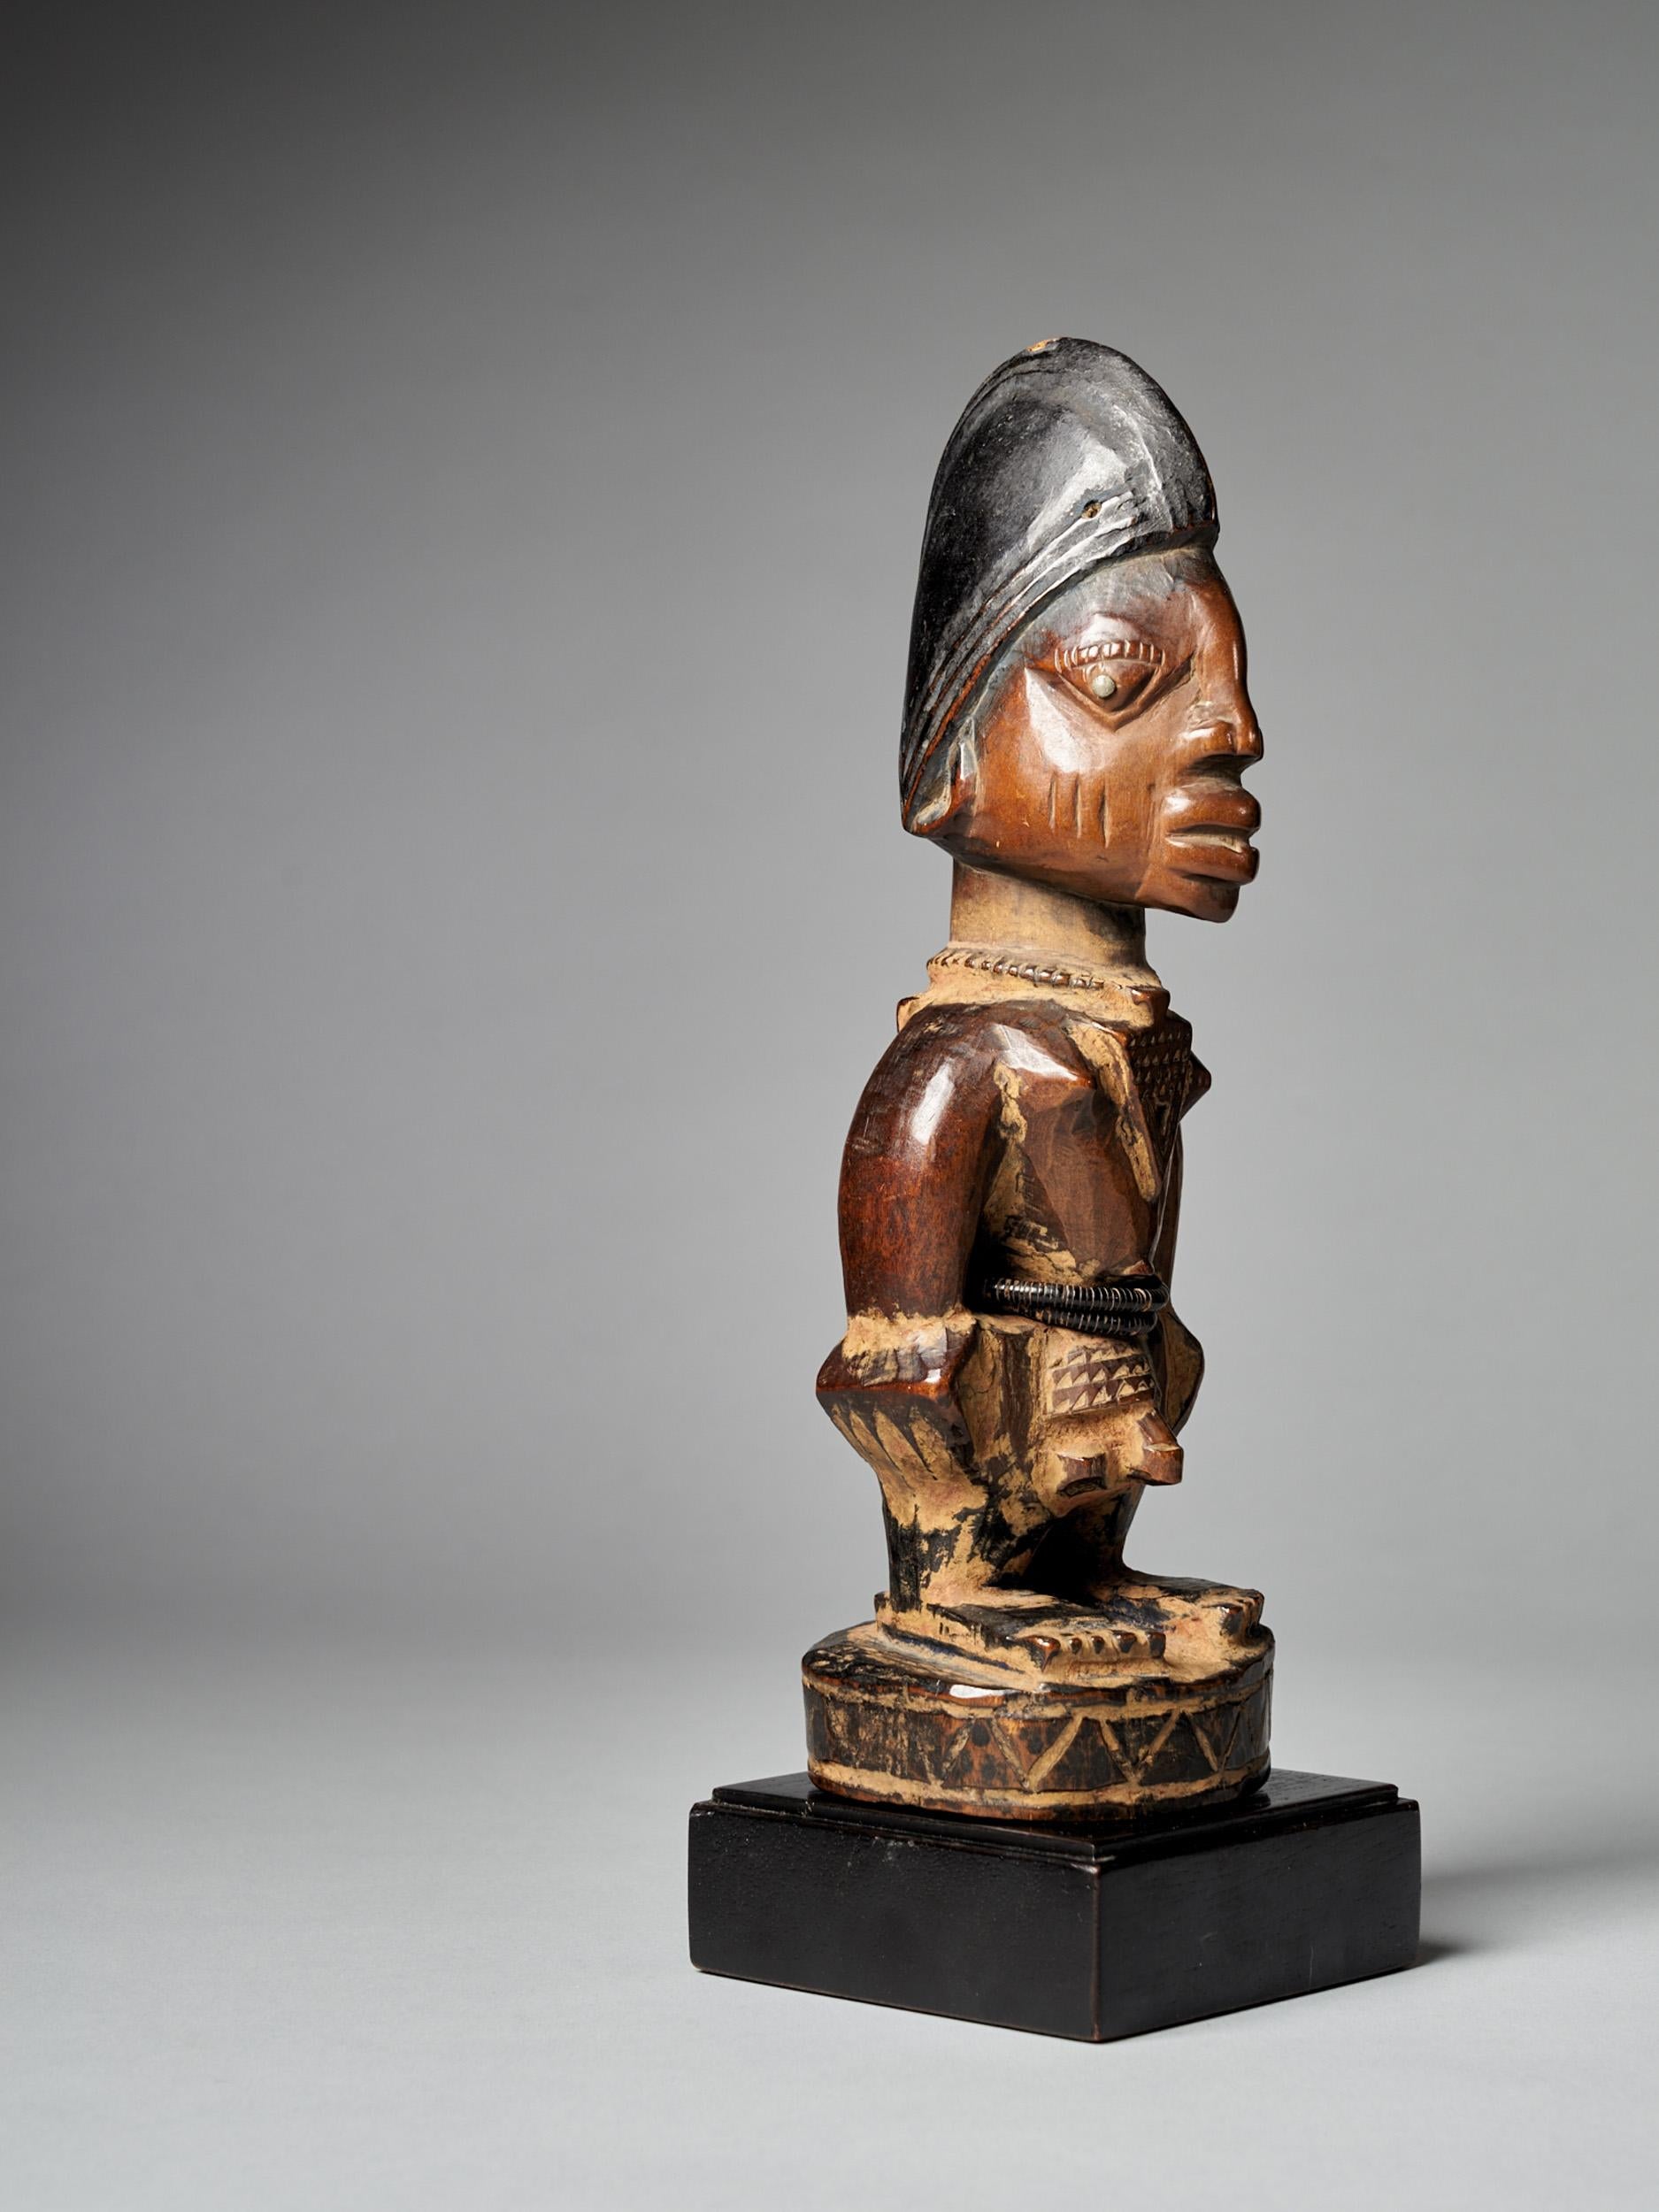 Eine fein geschnitzte, bedeutende männliche Yoruba-Ibeji-Figur mit hohem Kopfschmuck, ausdrucksstarken Augen, originalem Perlengürtel und starker Abnutzung und Politur vom einheimischen Gebrauch. Bereiche mit verkrustetem Rotholzpulver zwischen den